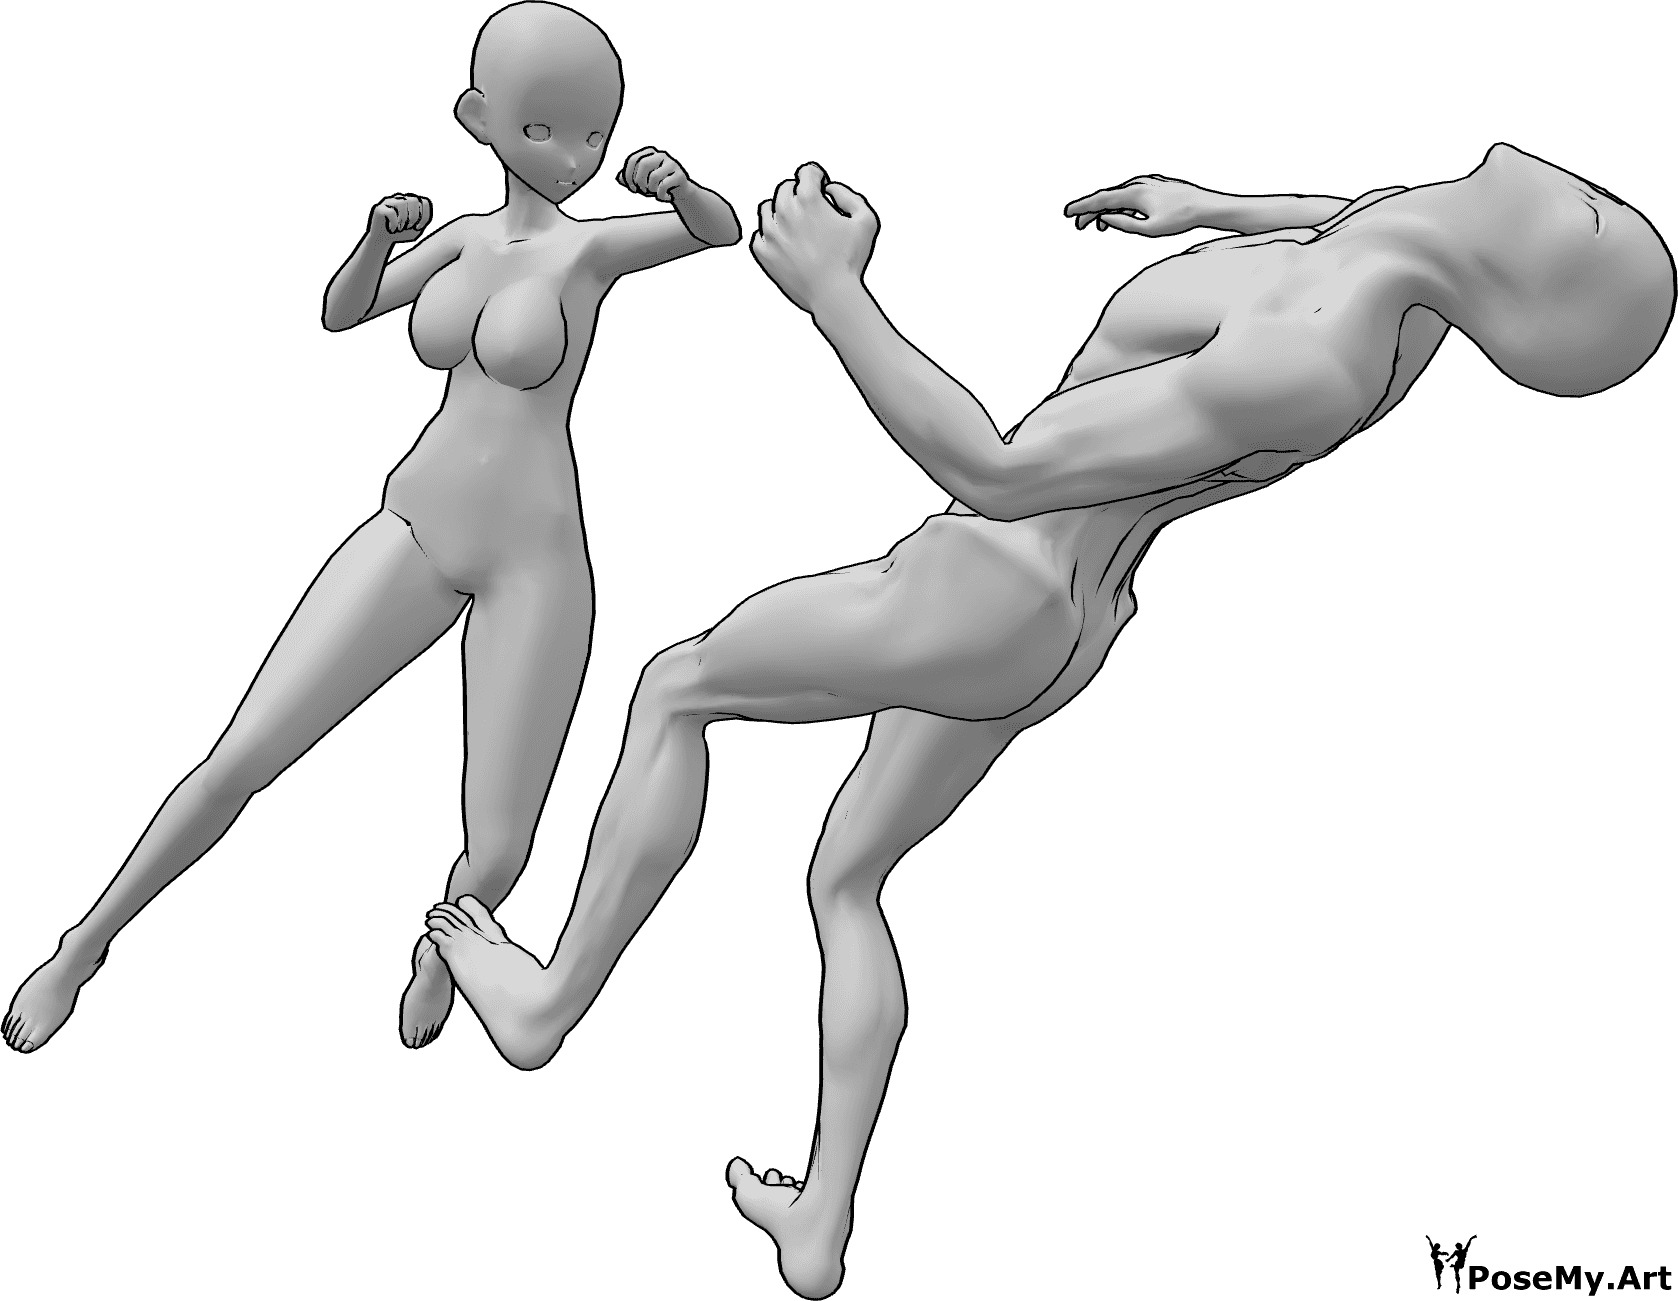 Referência de poses- Pose de soco de mulher de anime - O inimigo está a cair para trás inconscientemente de um murro na cabeça